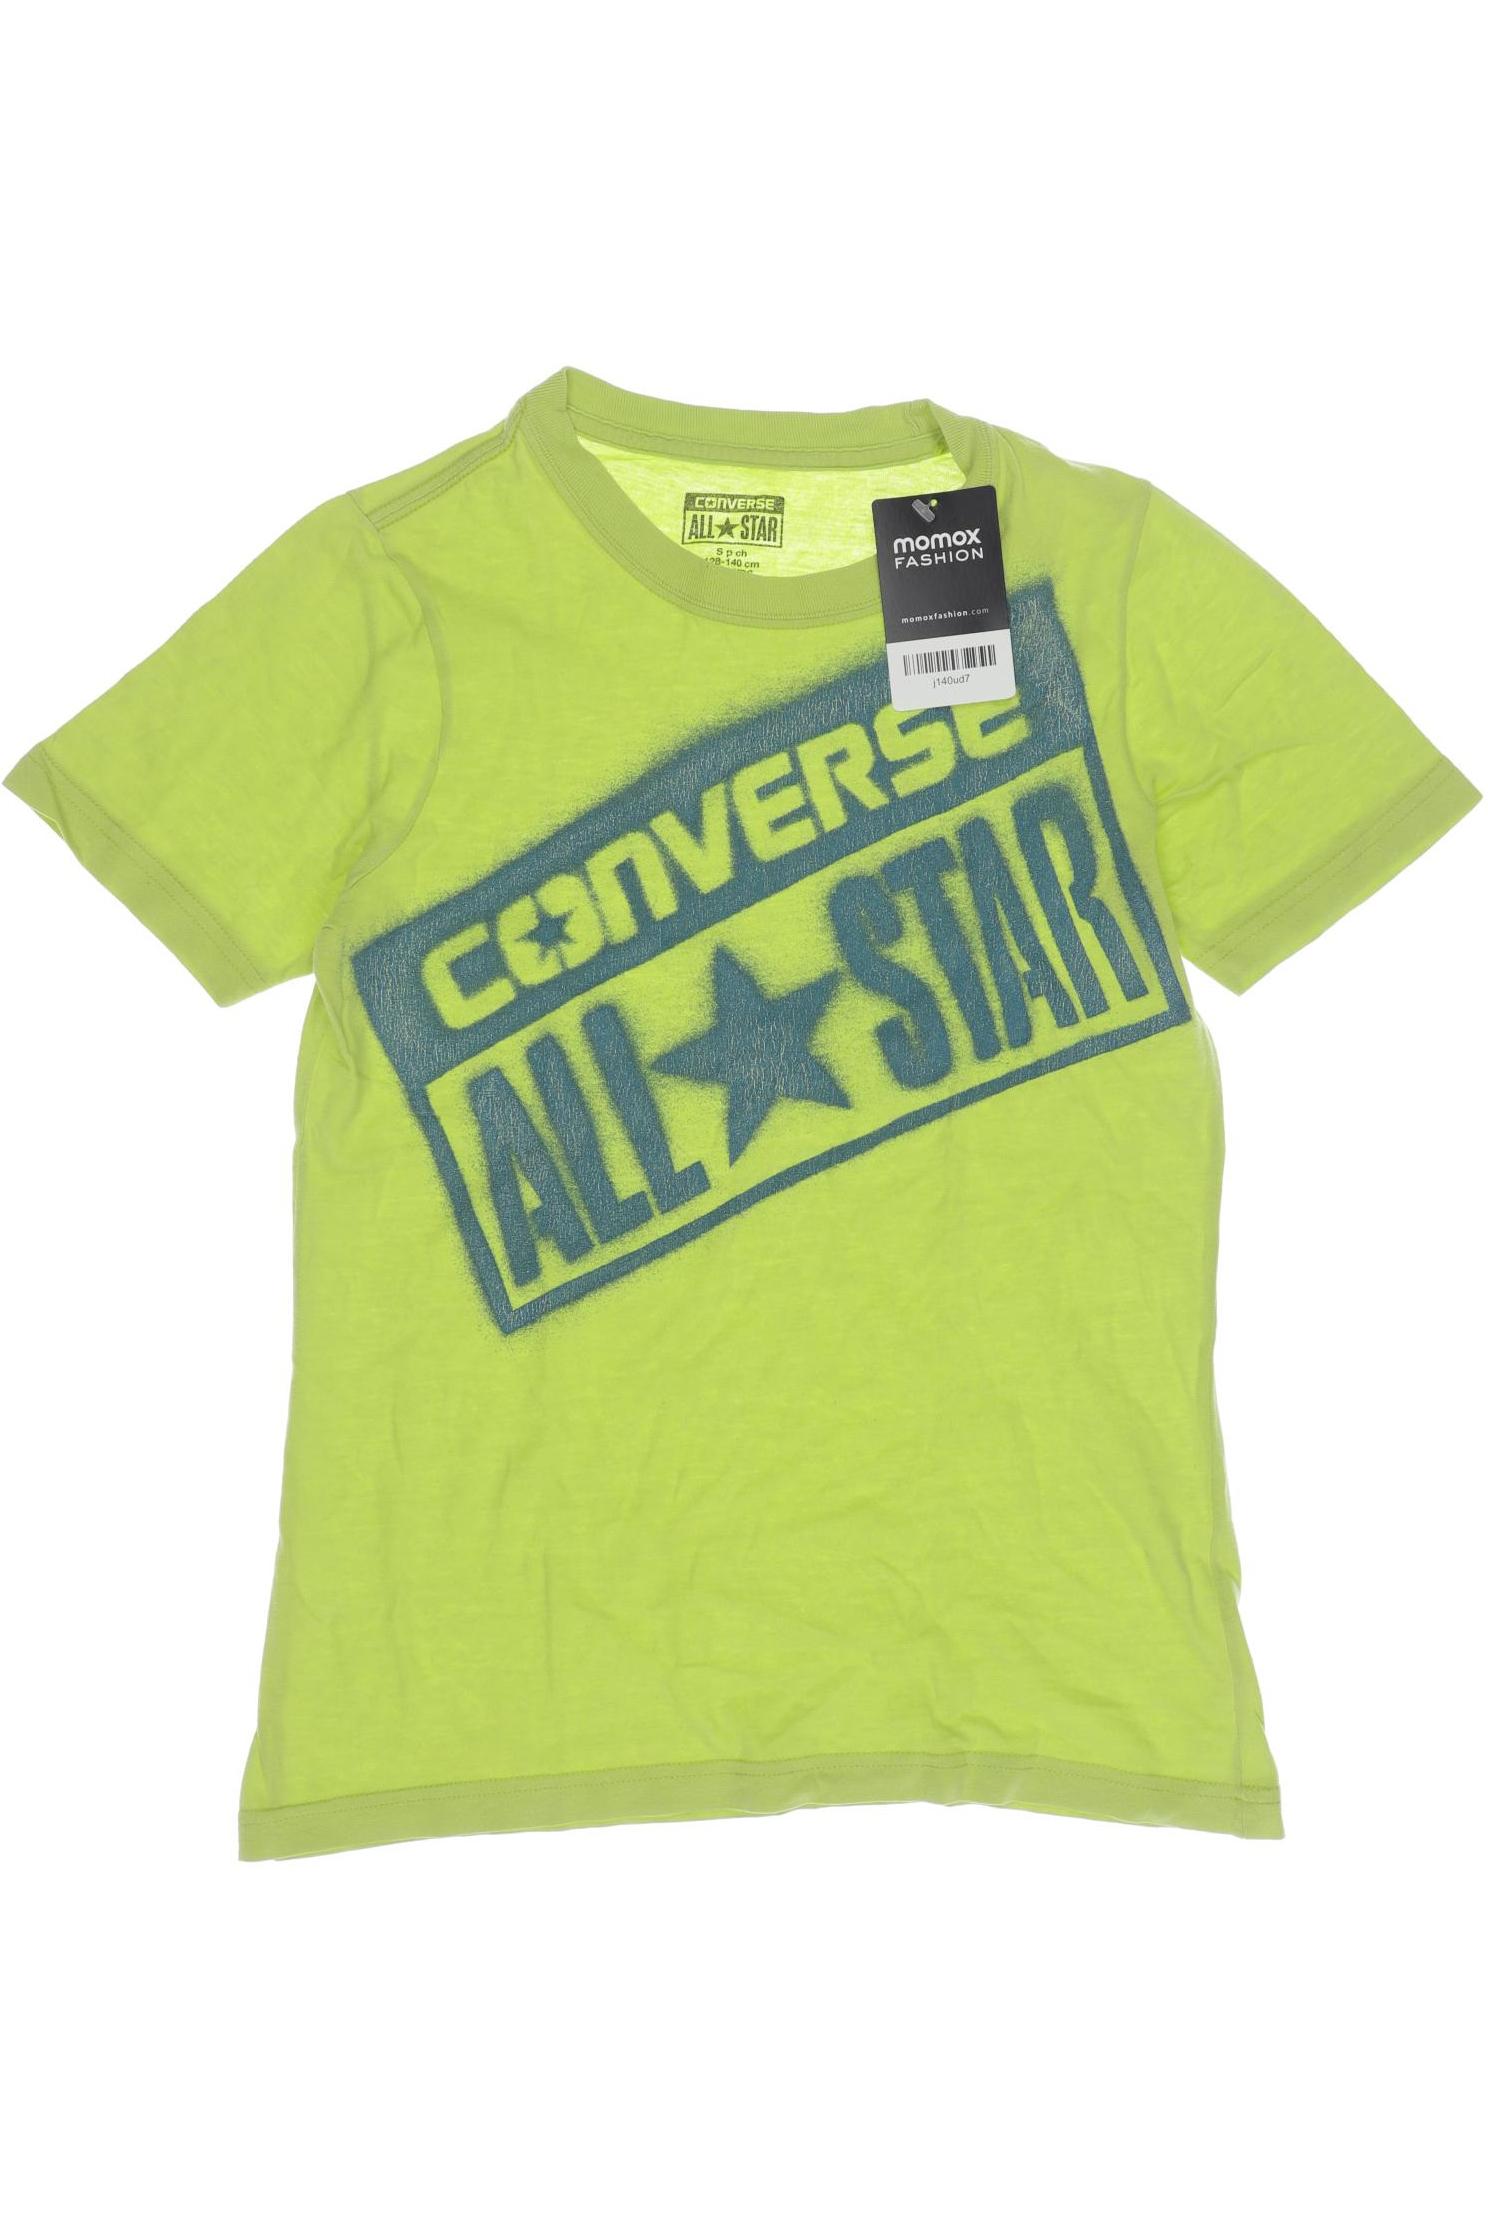 Converse Herren T-Shirt, hellgrün, Gr. 134 von Converse